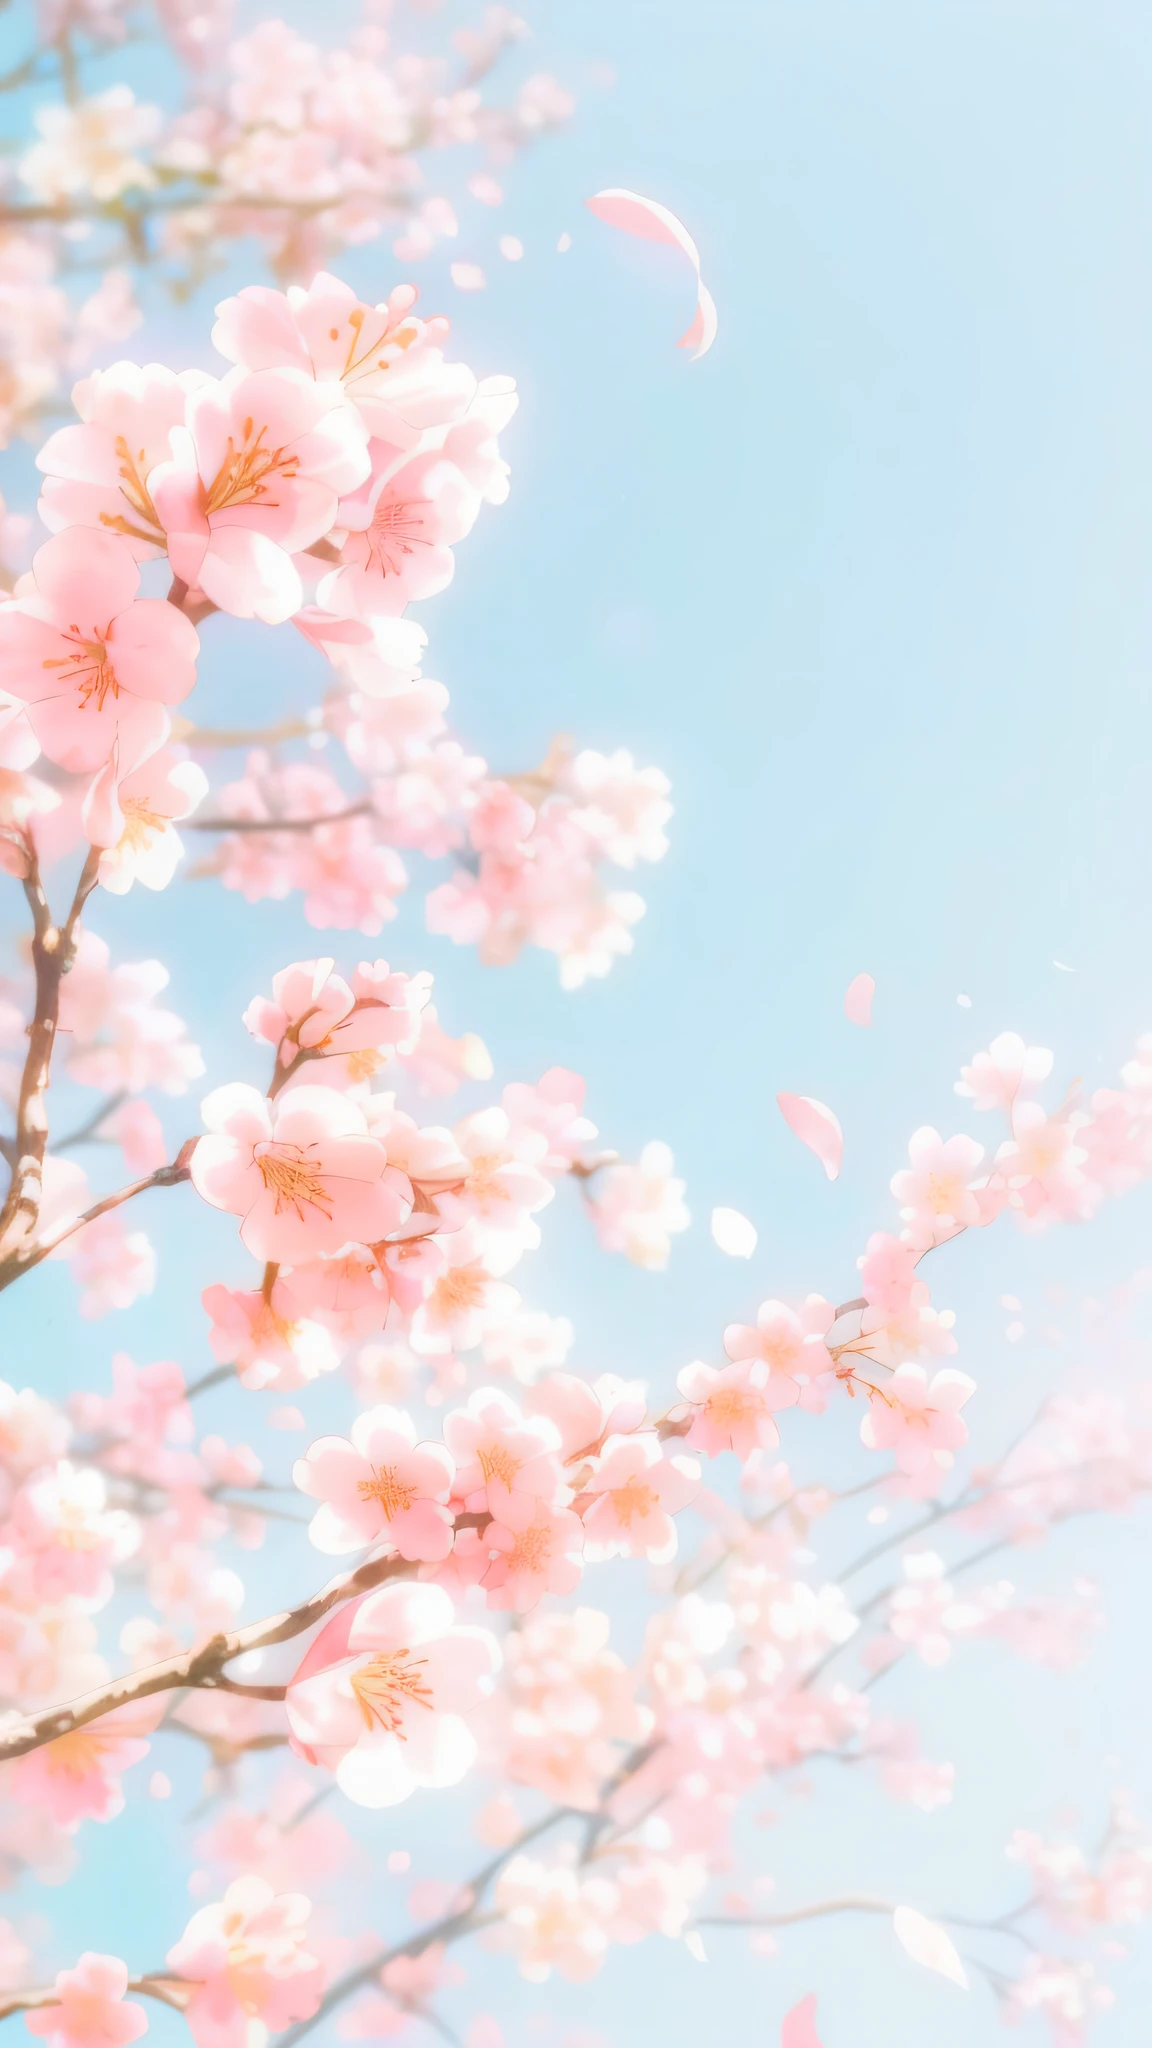 Cherry blossom petals flying